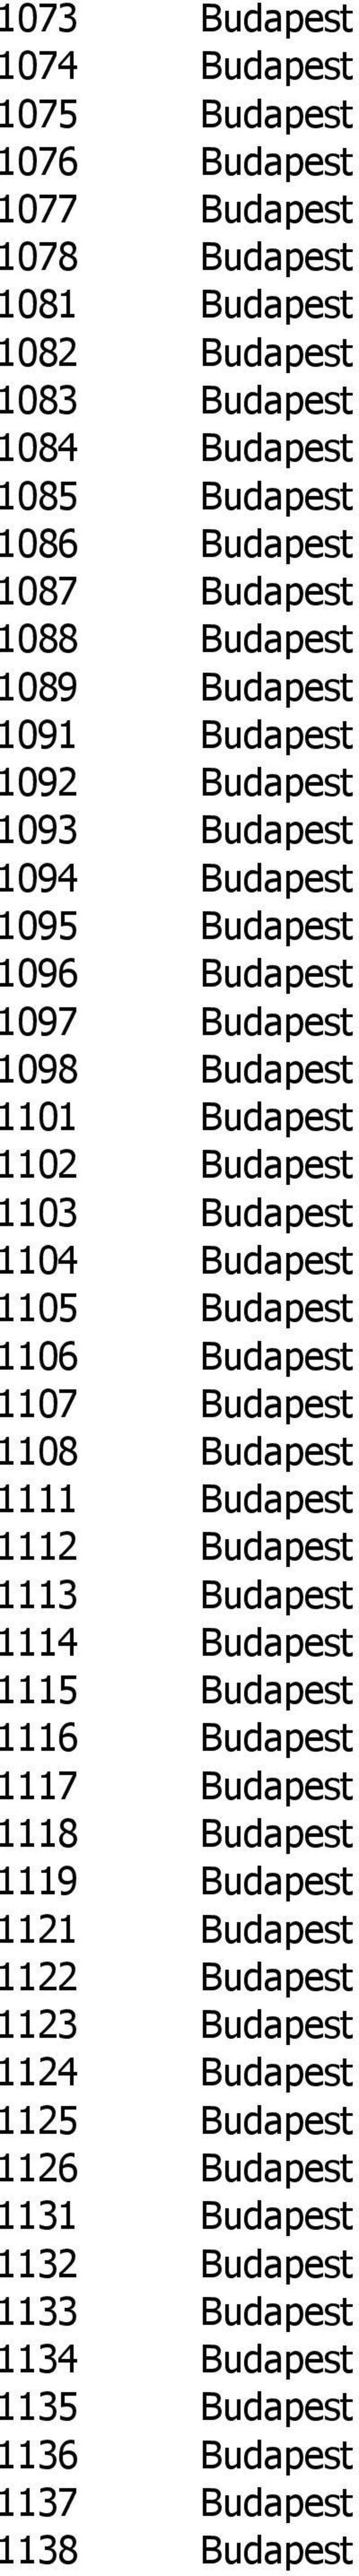 Budapest 1105 Budapest 1106 Budapest 1107 Budapest 1108 Budapest 1111 Budapest 1112 Budapest 1113 Budapest 1114 Budapest 1115 Budapest 1116 Budapest 1117 Budapest 1118 Budapest 1119